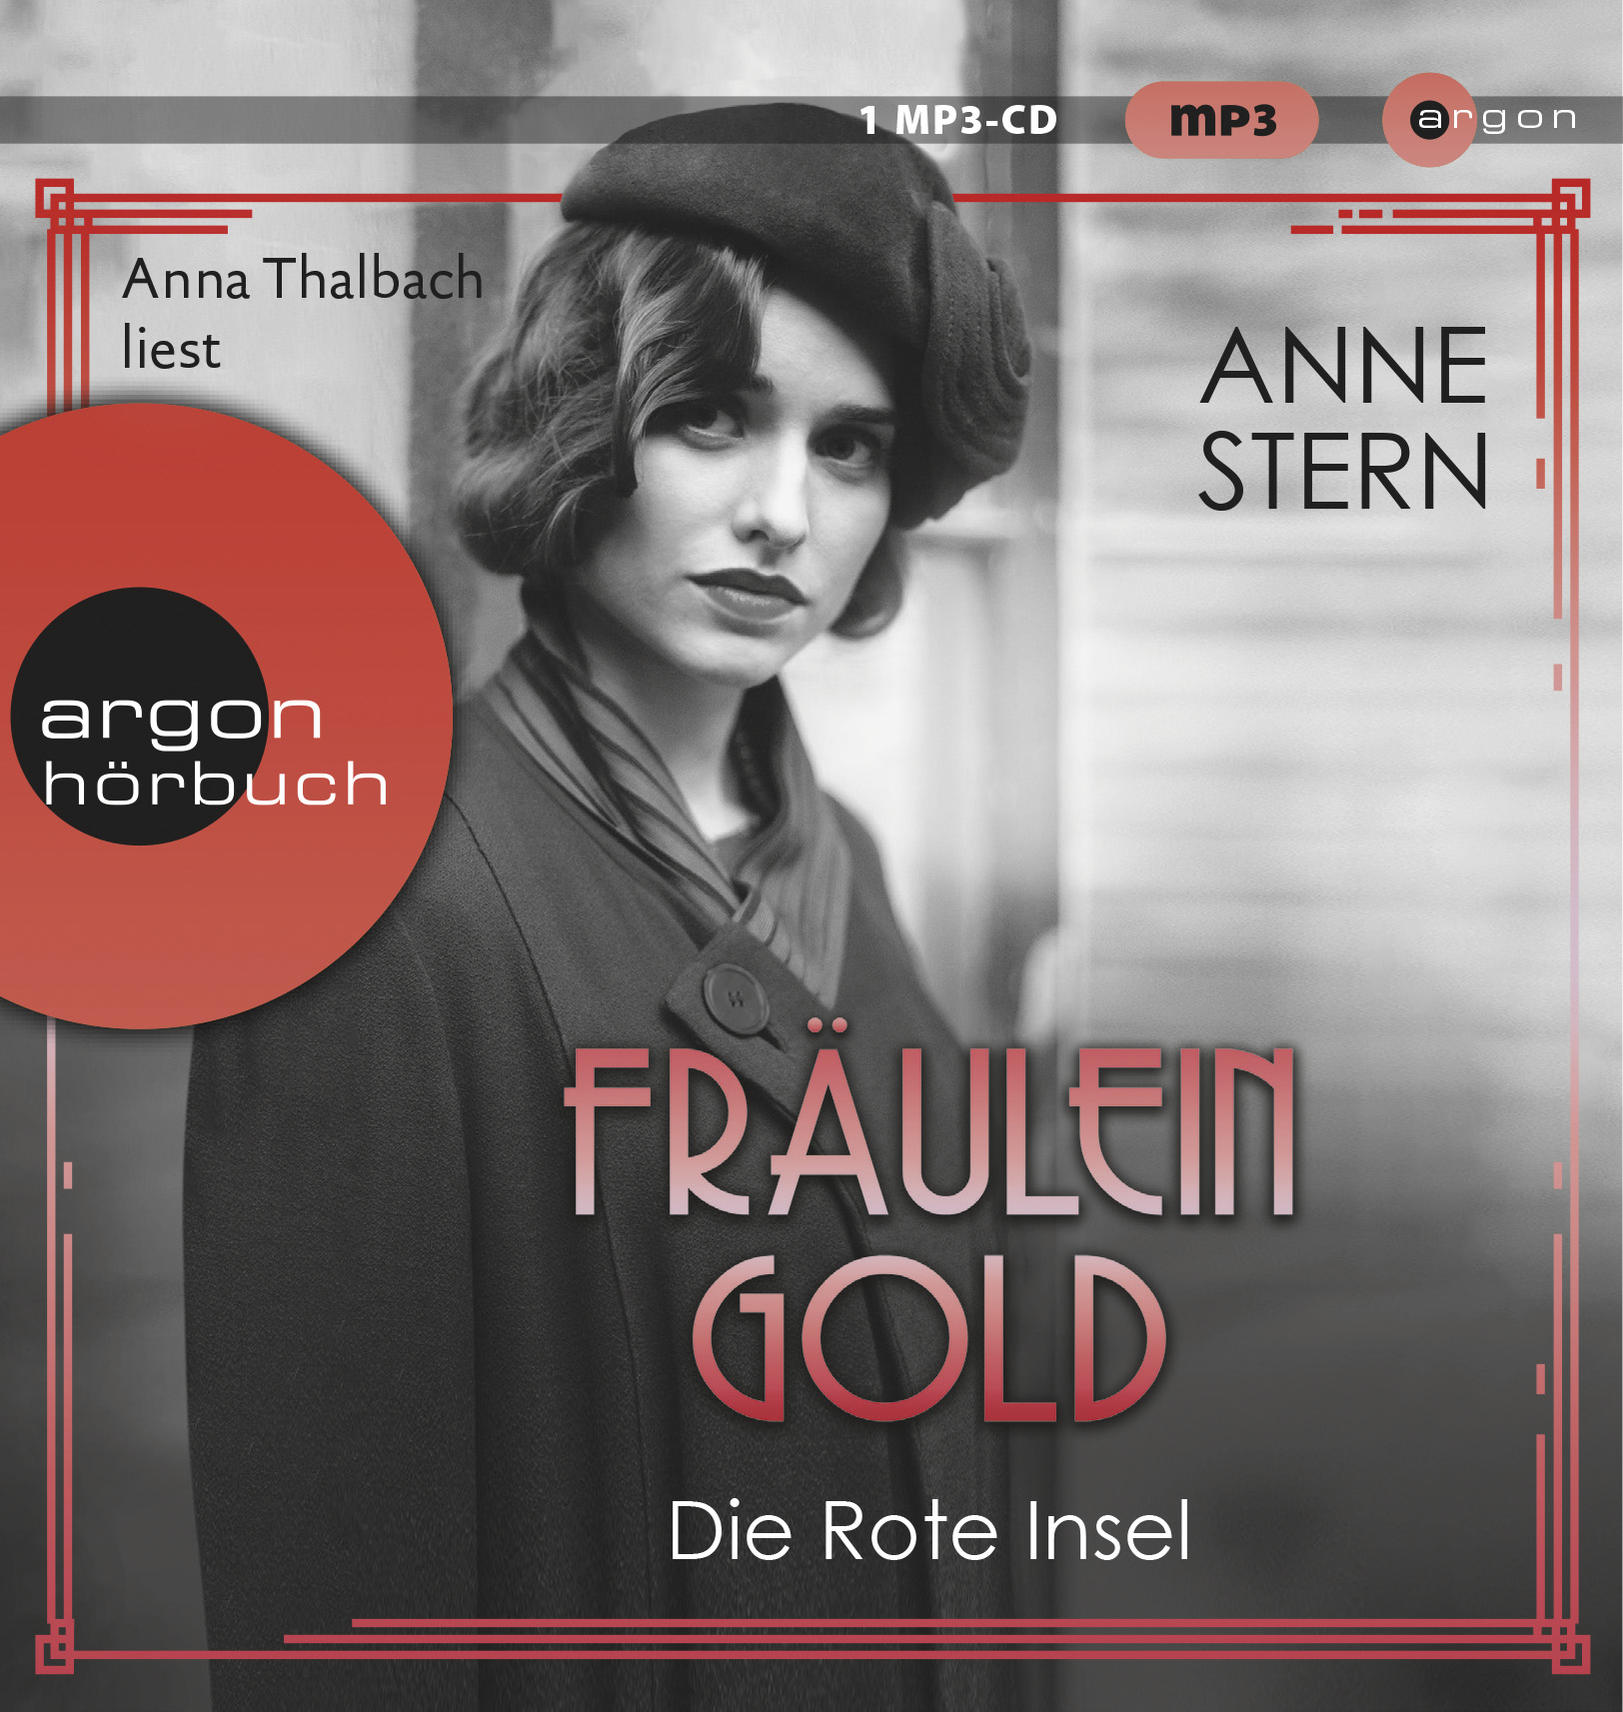 Anna - Thalbach Die Insel Rote - (MP3-CD) Fräulein Gold: